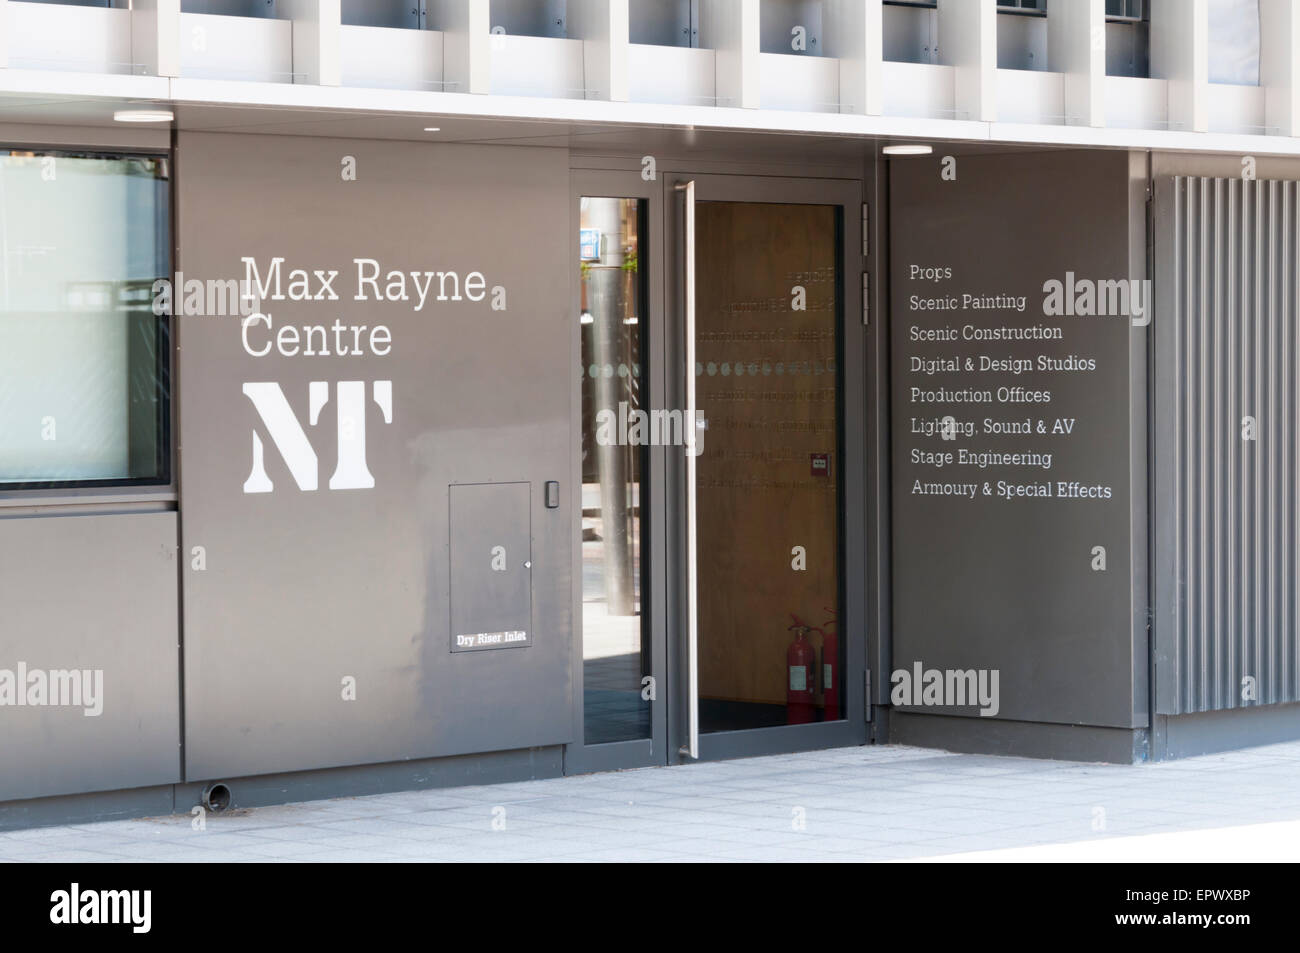 La Max Rayne Center presso il NT ha spazio per artisti e designer con strutture per i reparti tecnici e workshop. Foto Stock